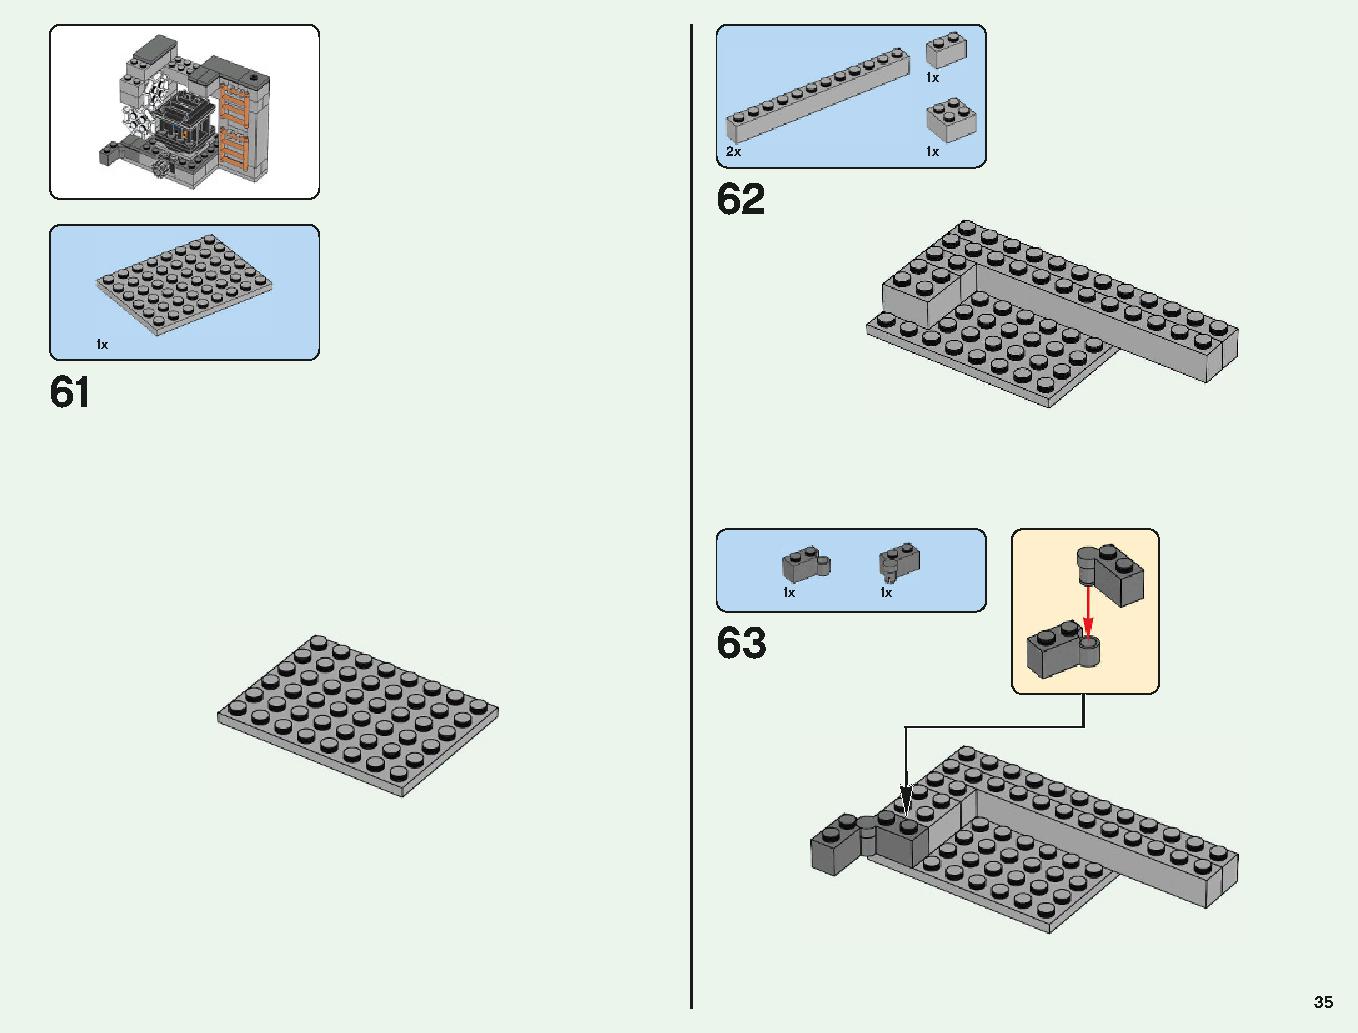 ベッドロックの冒険 21147 レゴの商品情報 レゴの説明書・組立方法 35 page